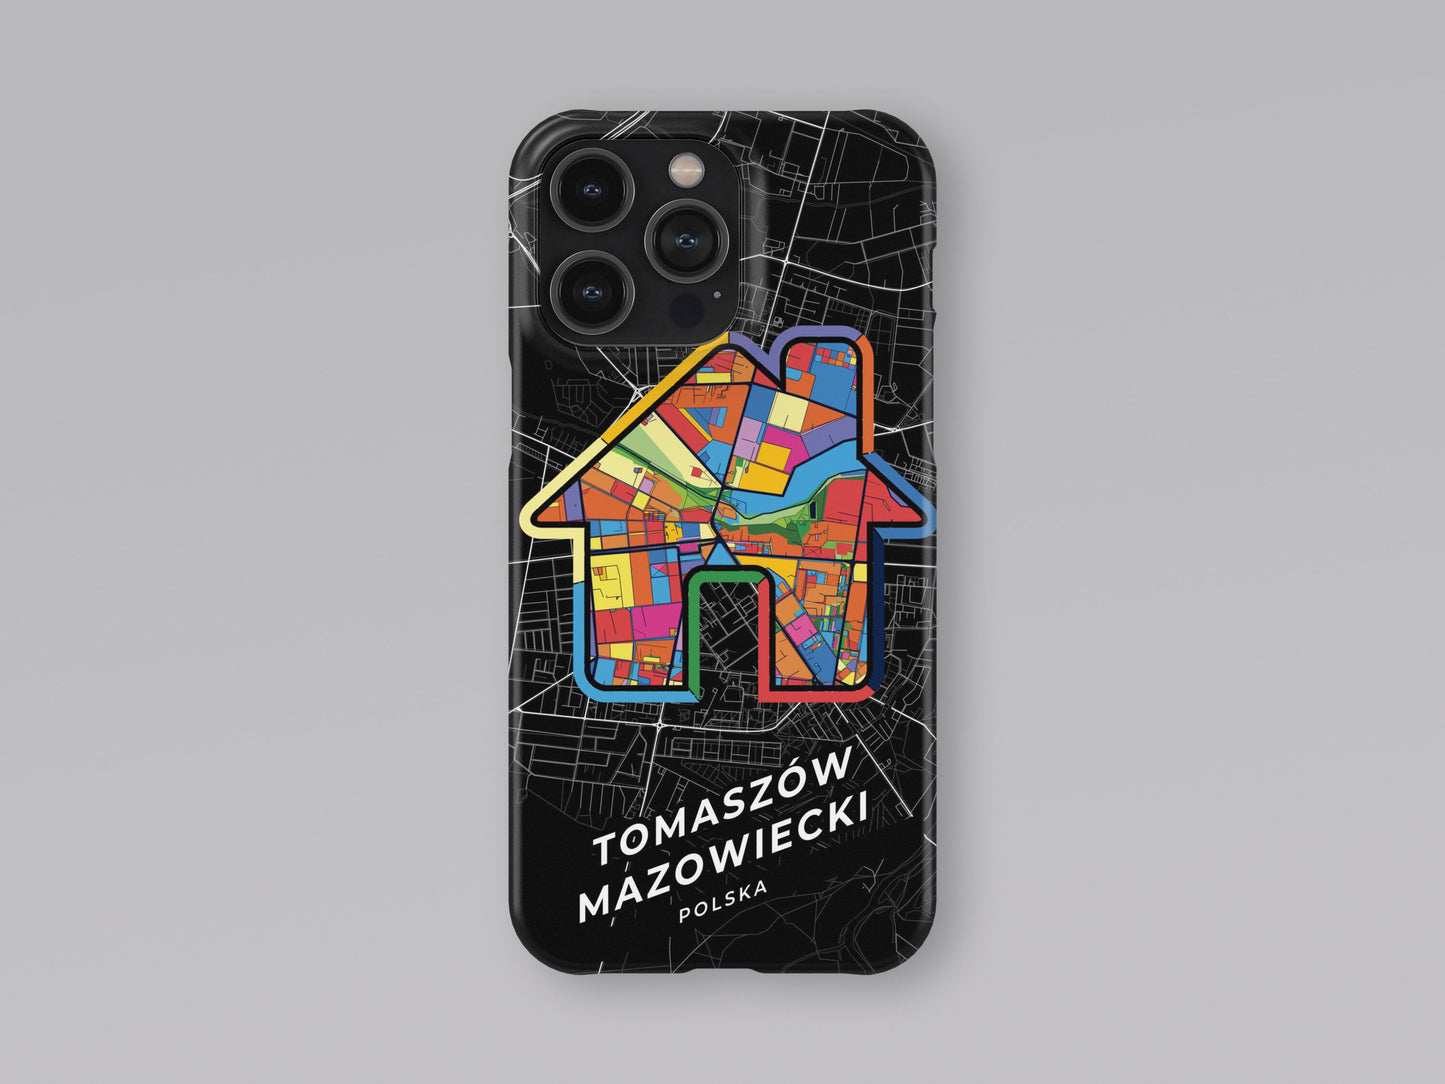 Tomaszów Mazowiecki Poland slim phone case with colorful icon 3